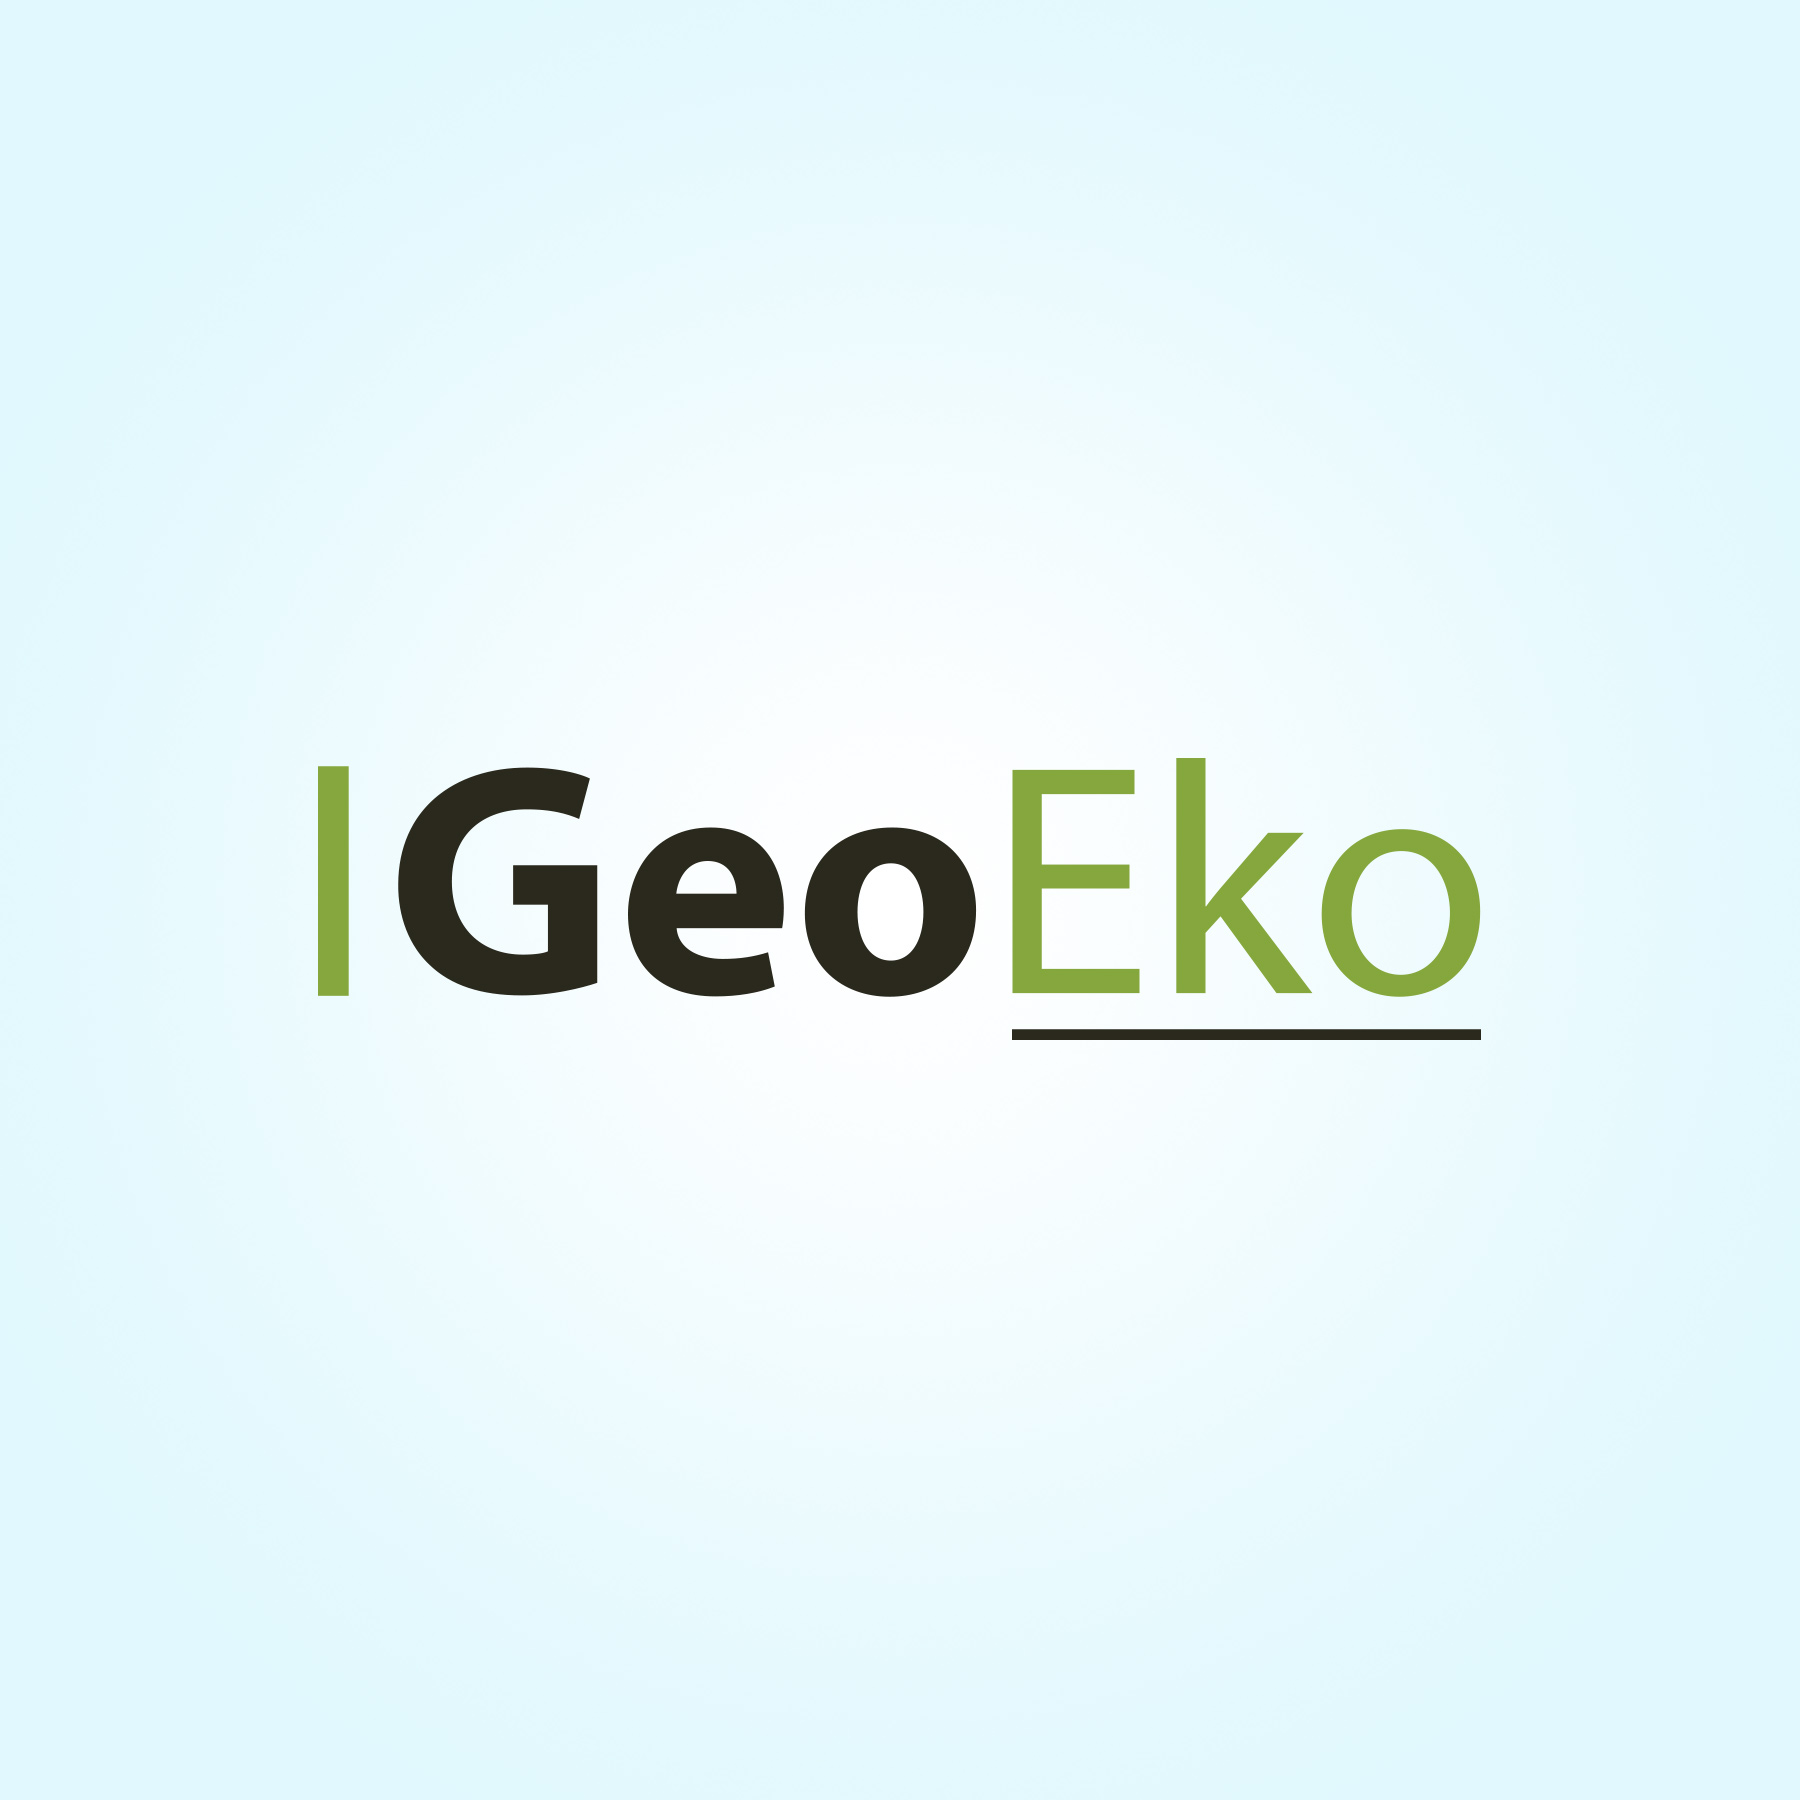 Logo GeoEko